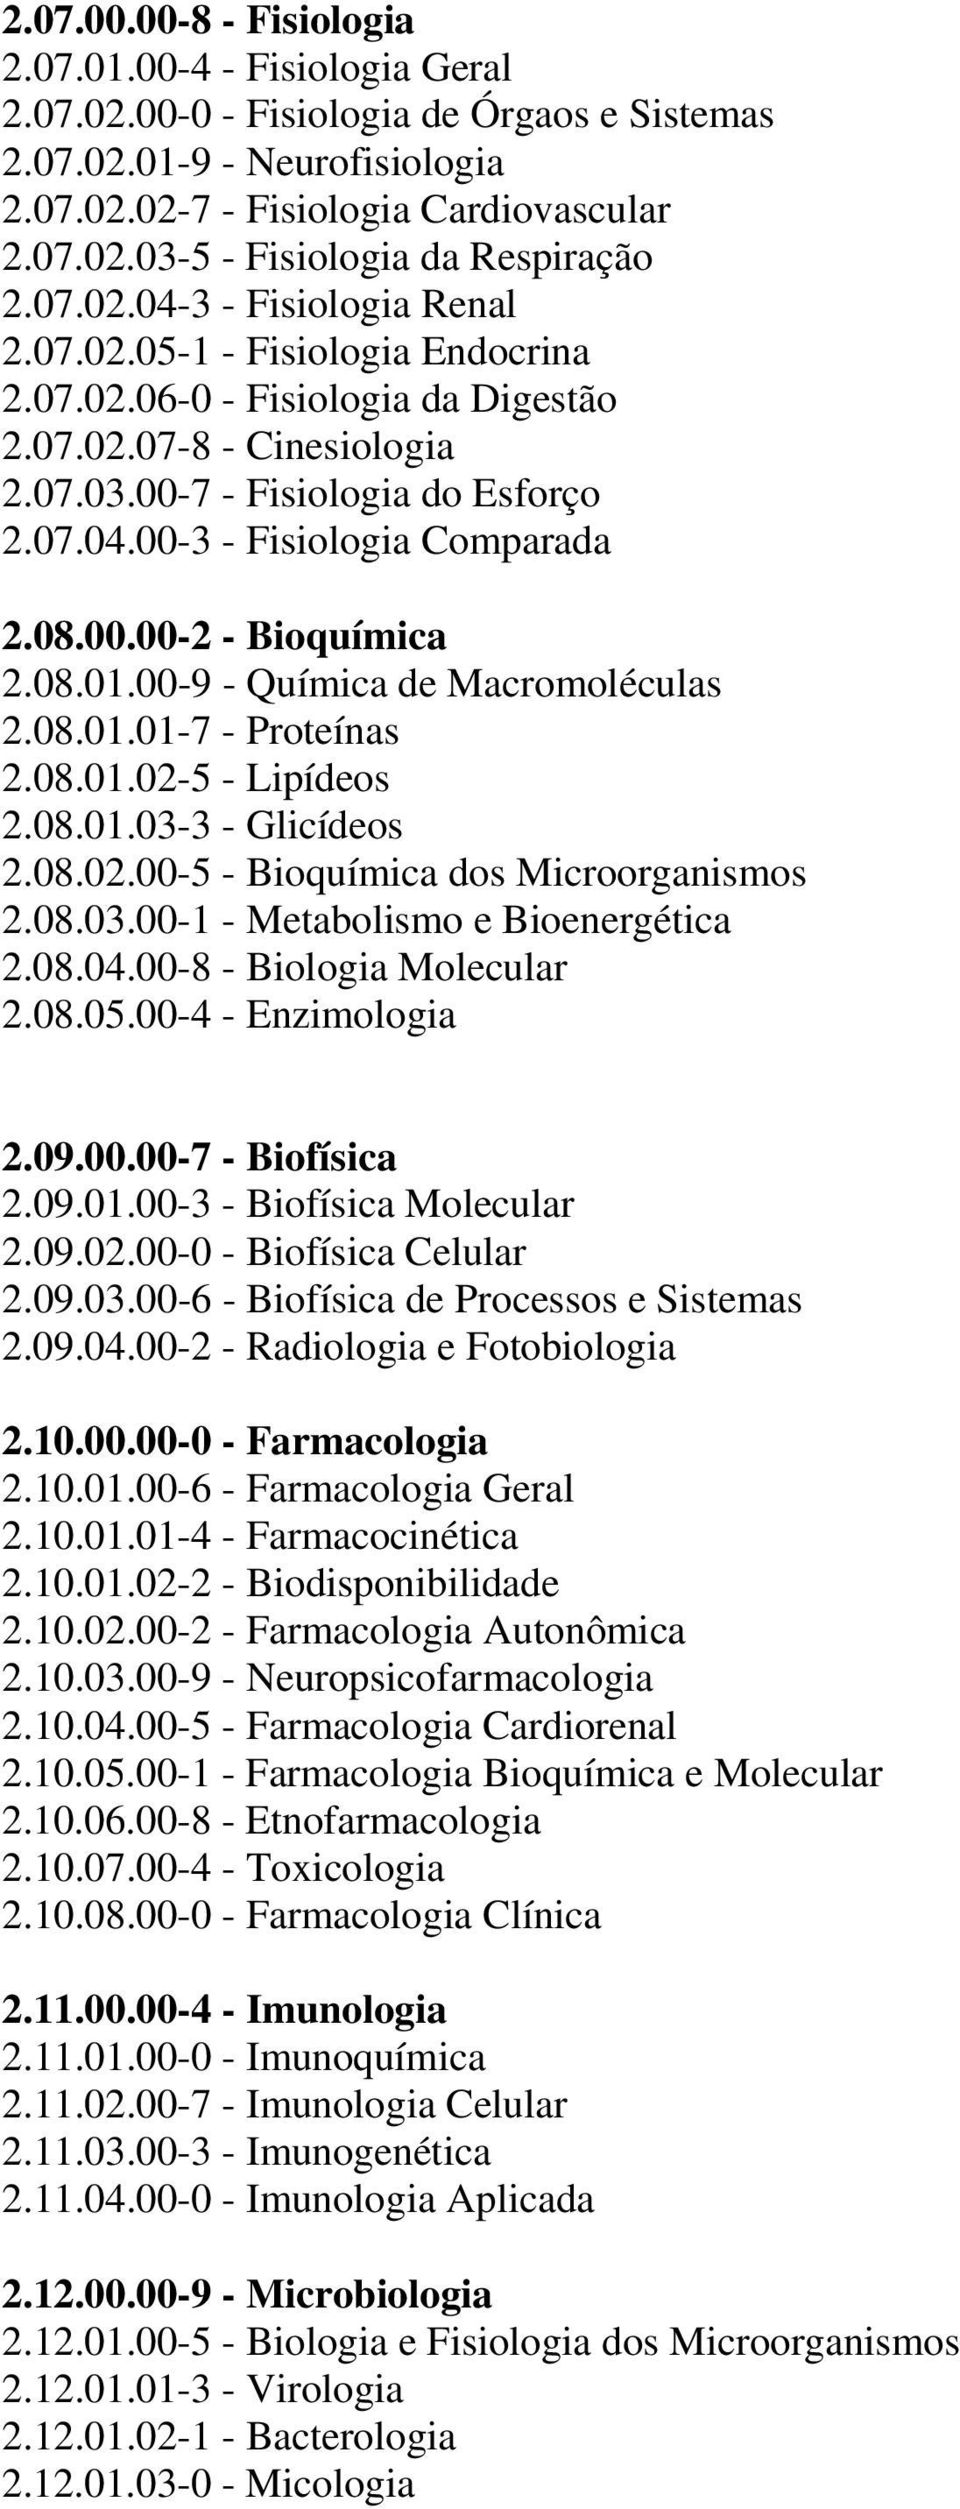 08.00.00-2 - Bioquímica 2.08.01.00-9 - Química de Macromoléculas 2.08.01.01-7 - Proteínas 2.08.01.02-5 - Lipídeos 2.08.01.03-3 - Glicídeos 2.08.02.00-5 - Bioquímica dos Microorganismos 2.08.03.00-1 - Metabolismo e Bioenergética 2.